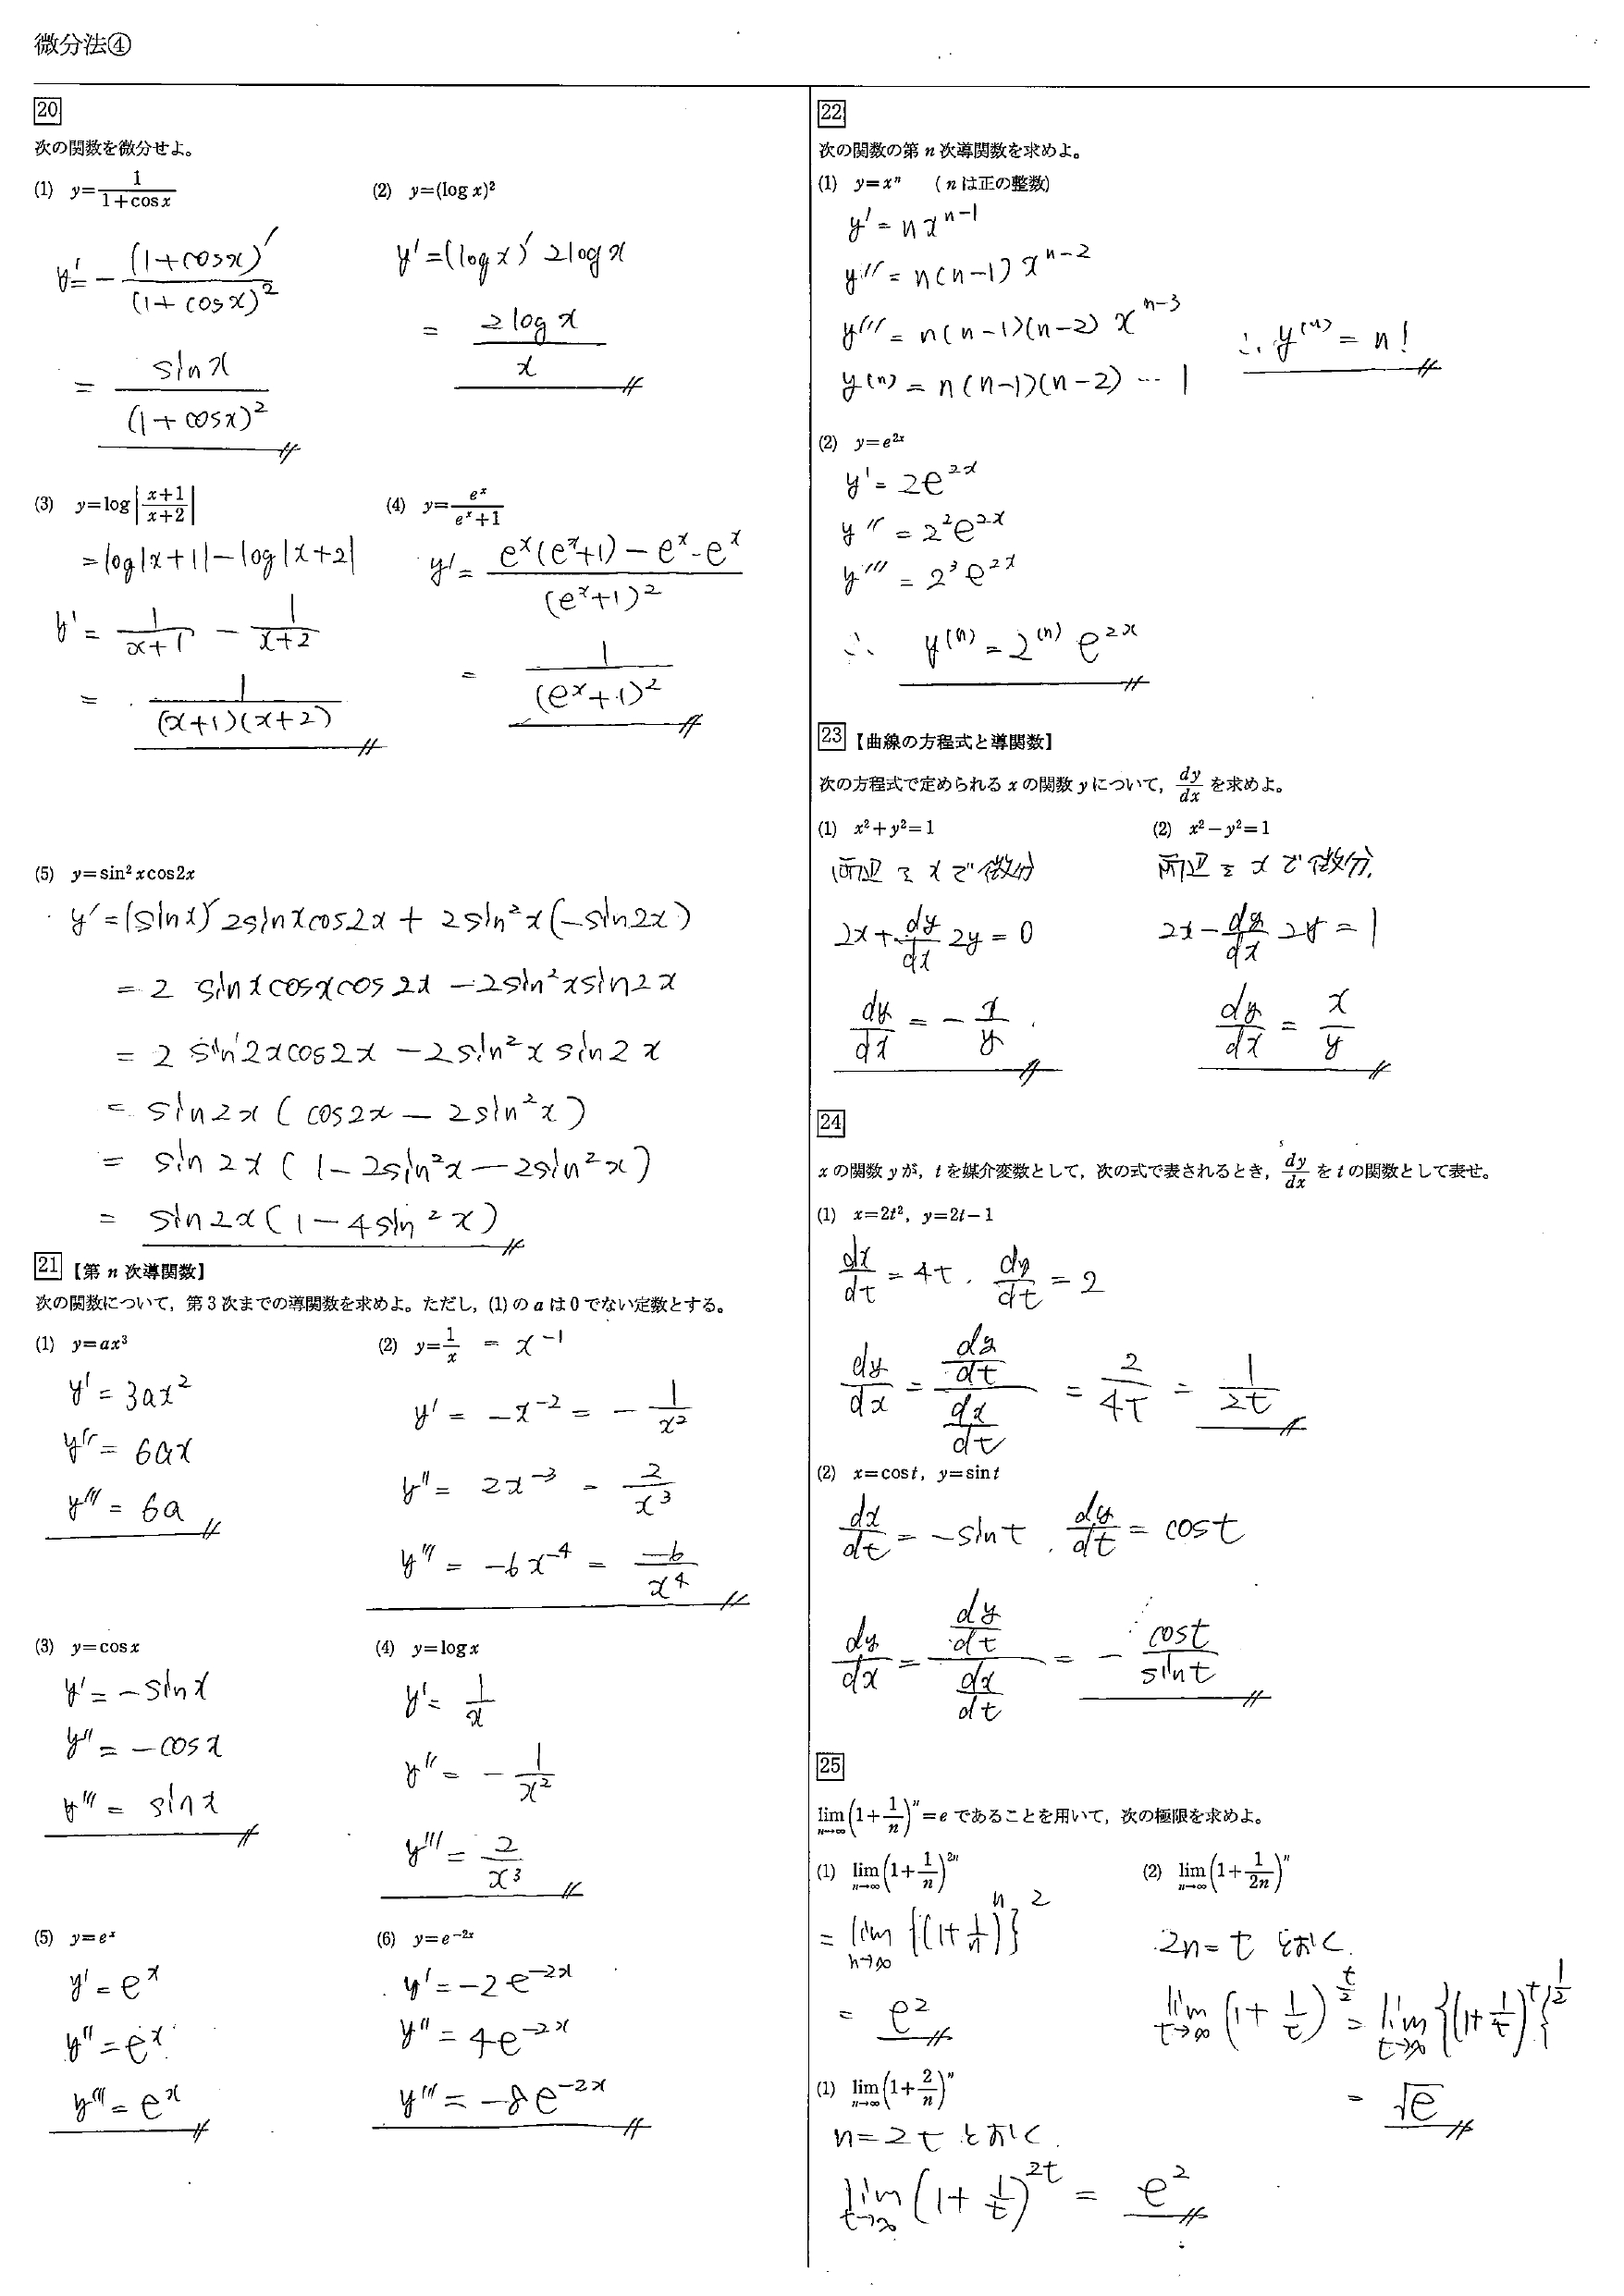 高校数学 微分法 教科書 問題 解答 公式 解説 学校よりわかりやすいサイト